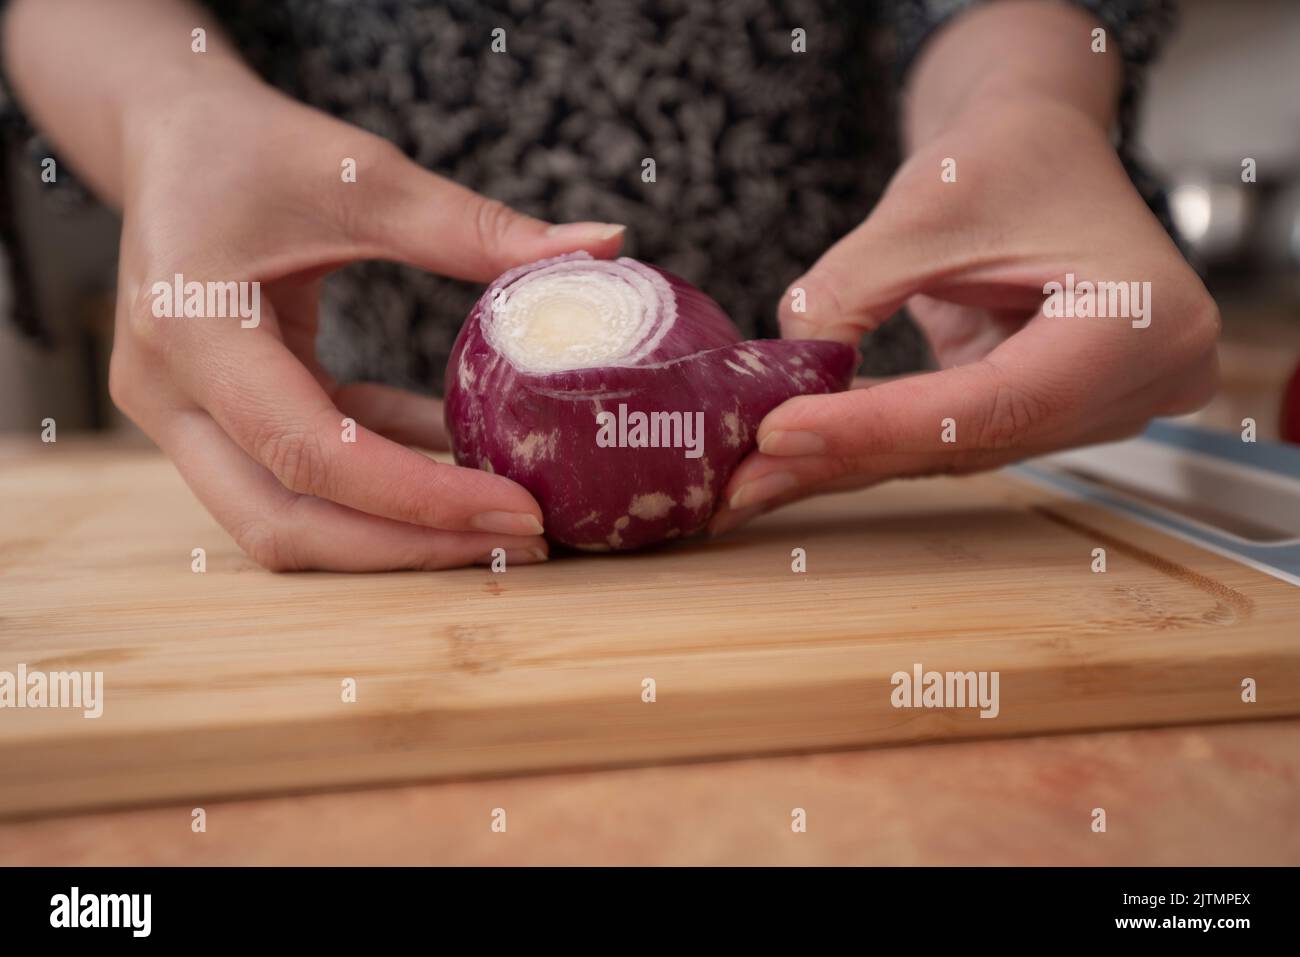 Die Hände der Frau beginnen, eine Zwiebel auf einem Holzbrett in der Küche zu schälen Stockfoto